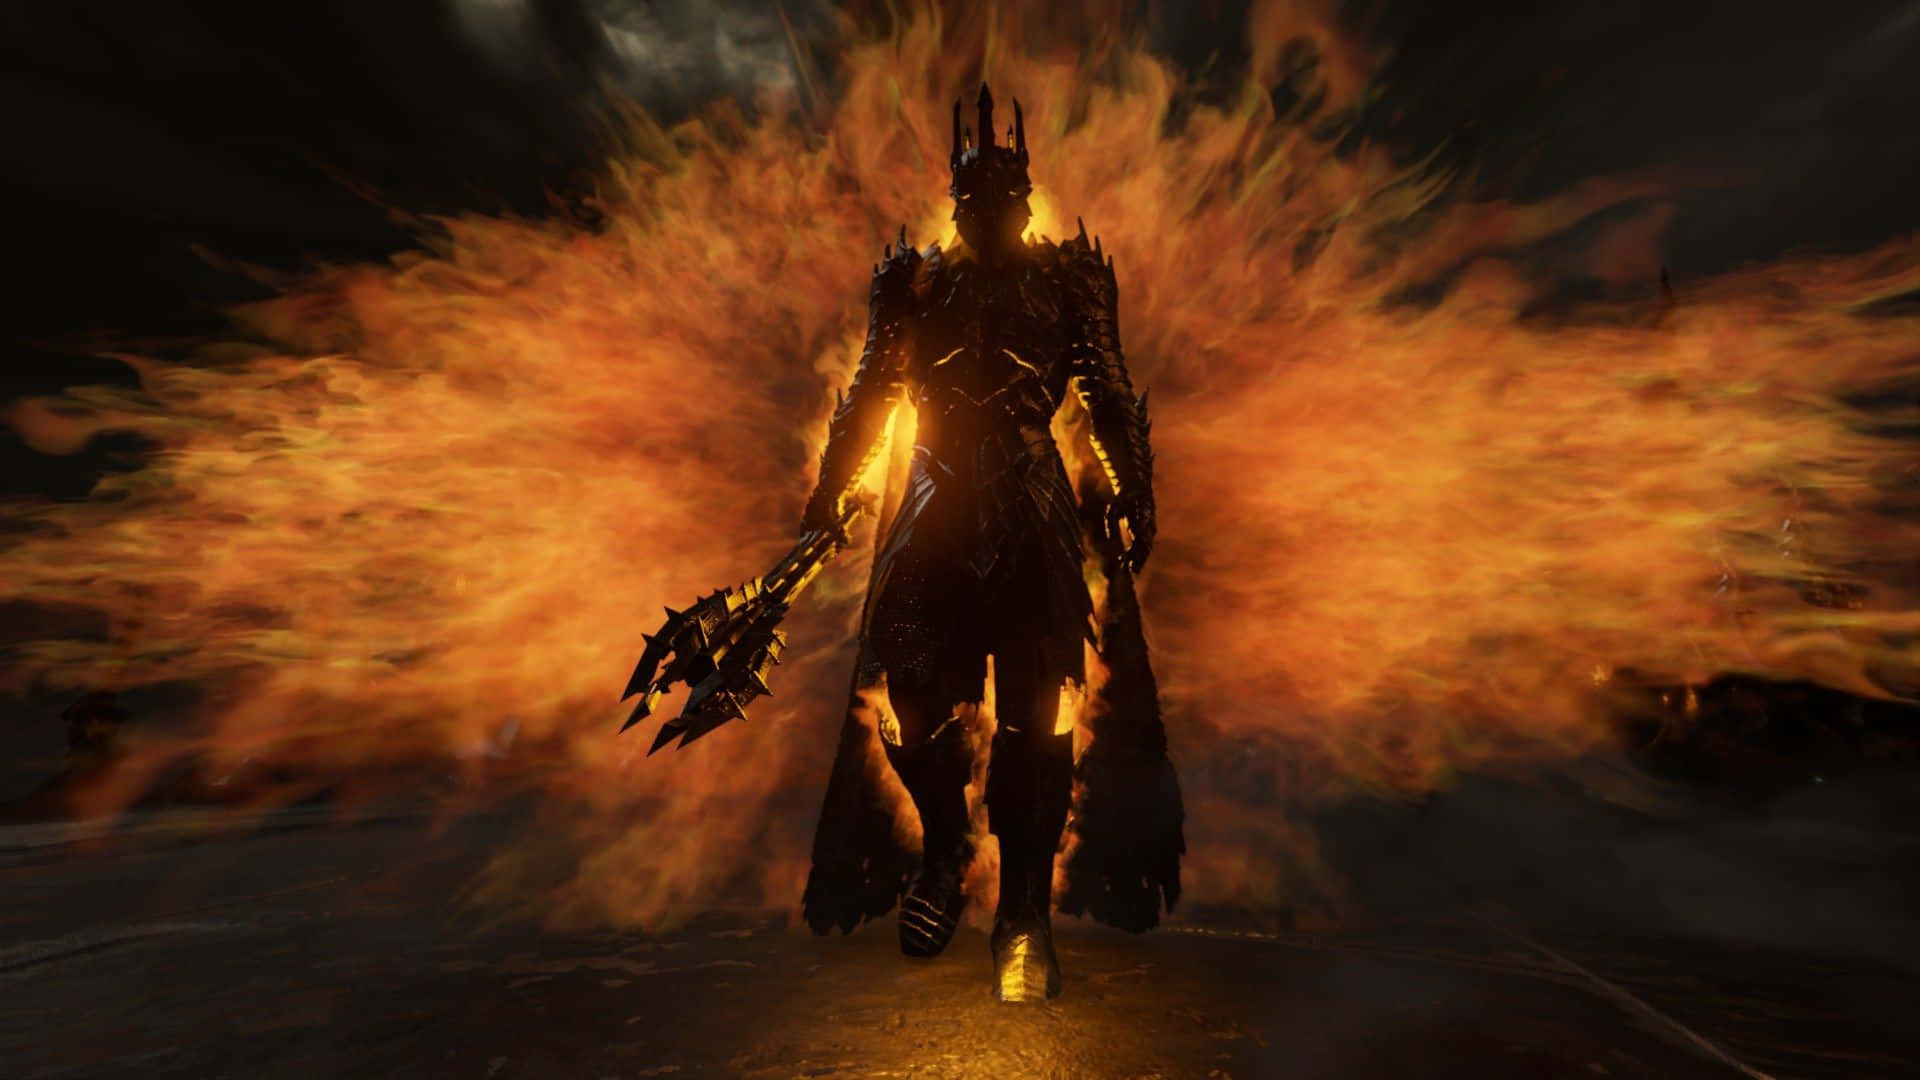 Bestehintergrundbild Von Shadow Of War: Sauron Mit Feurigen Kräften.